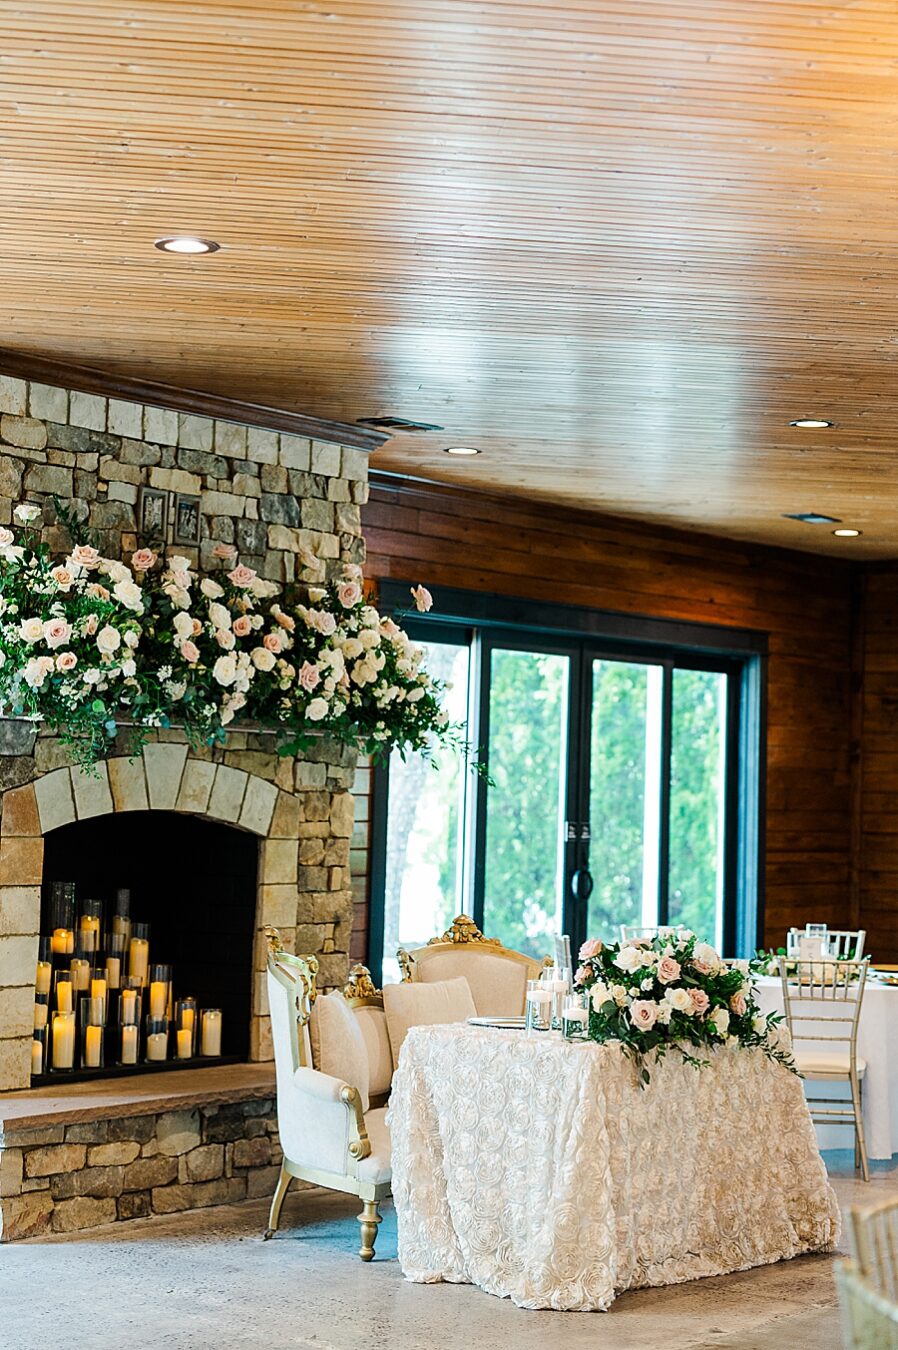 The sweetheart table at Julianna Wedding by Amanda May Photos